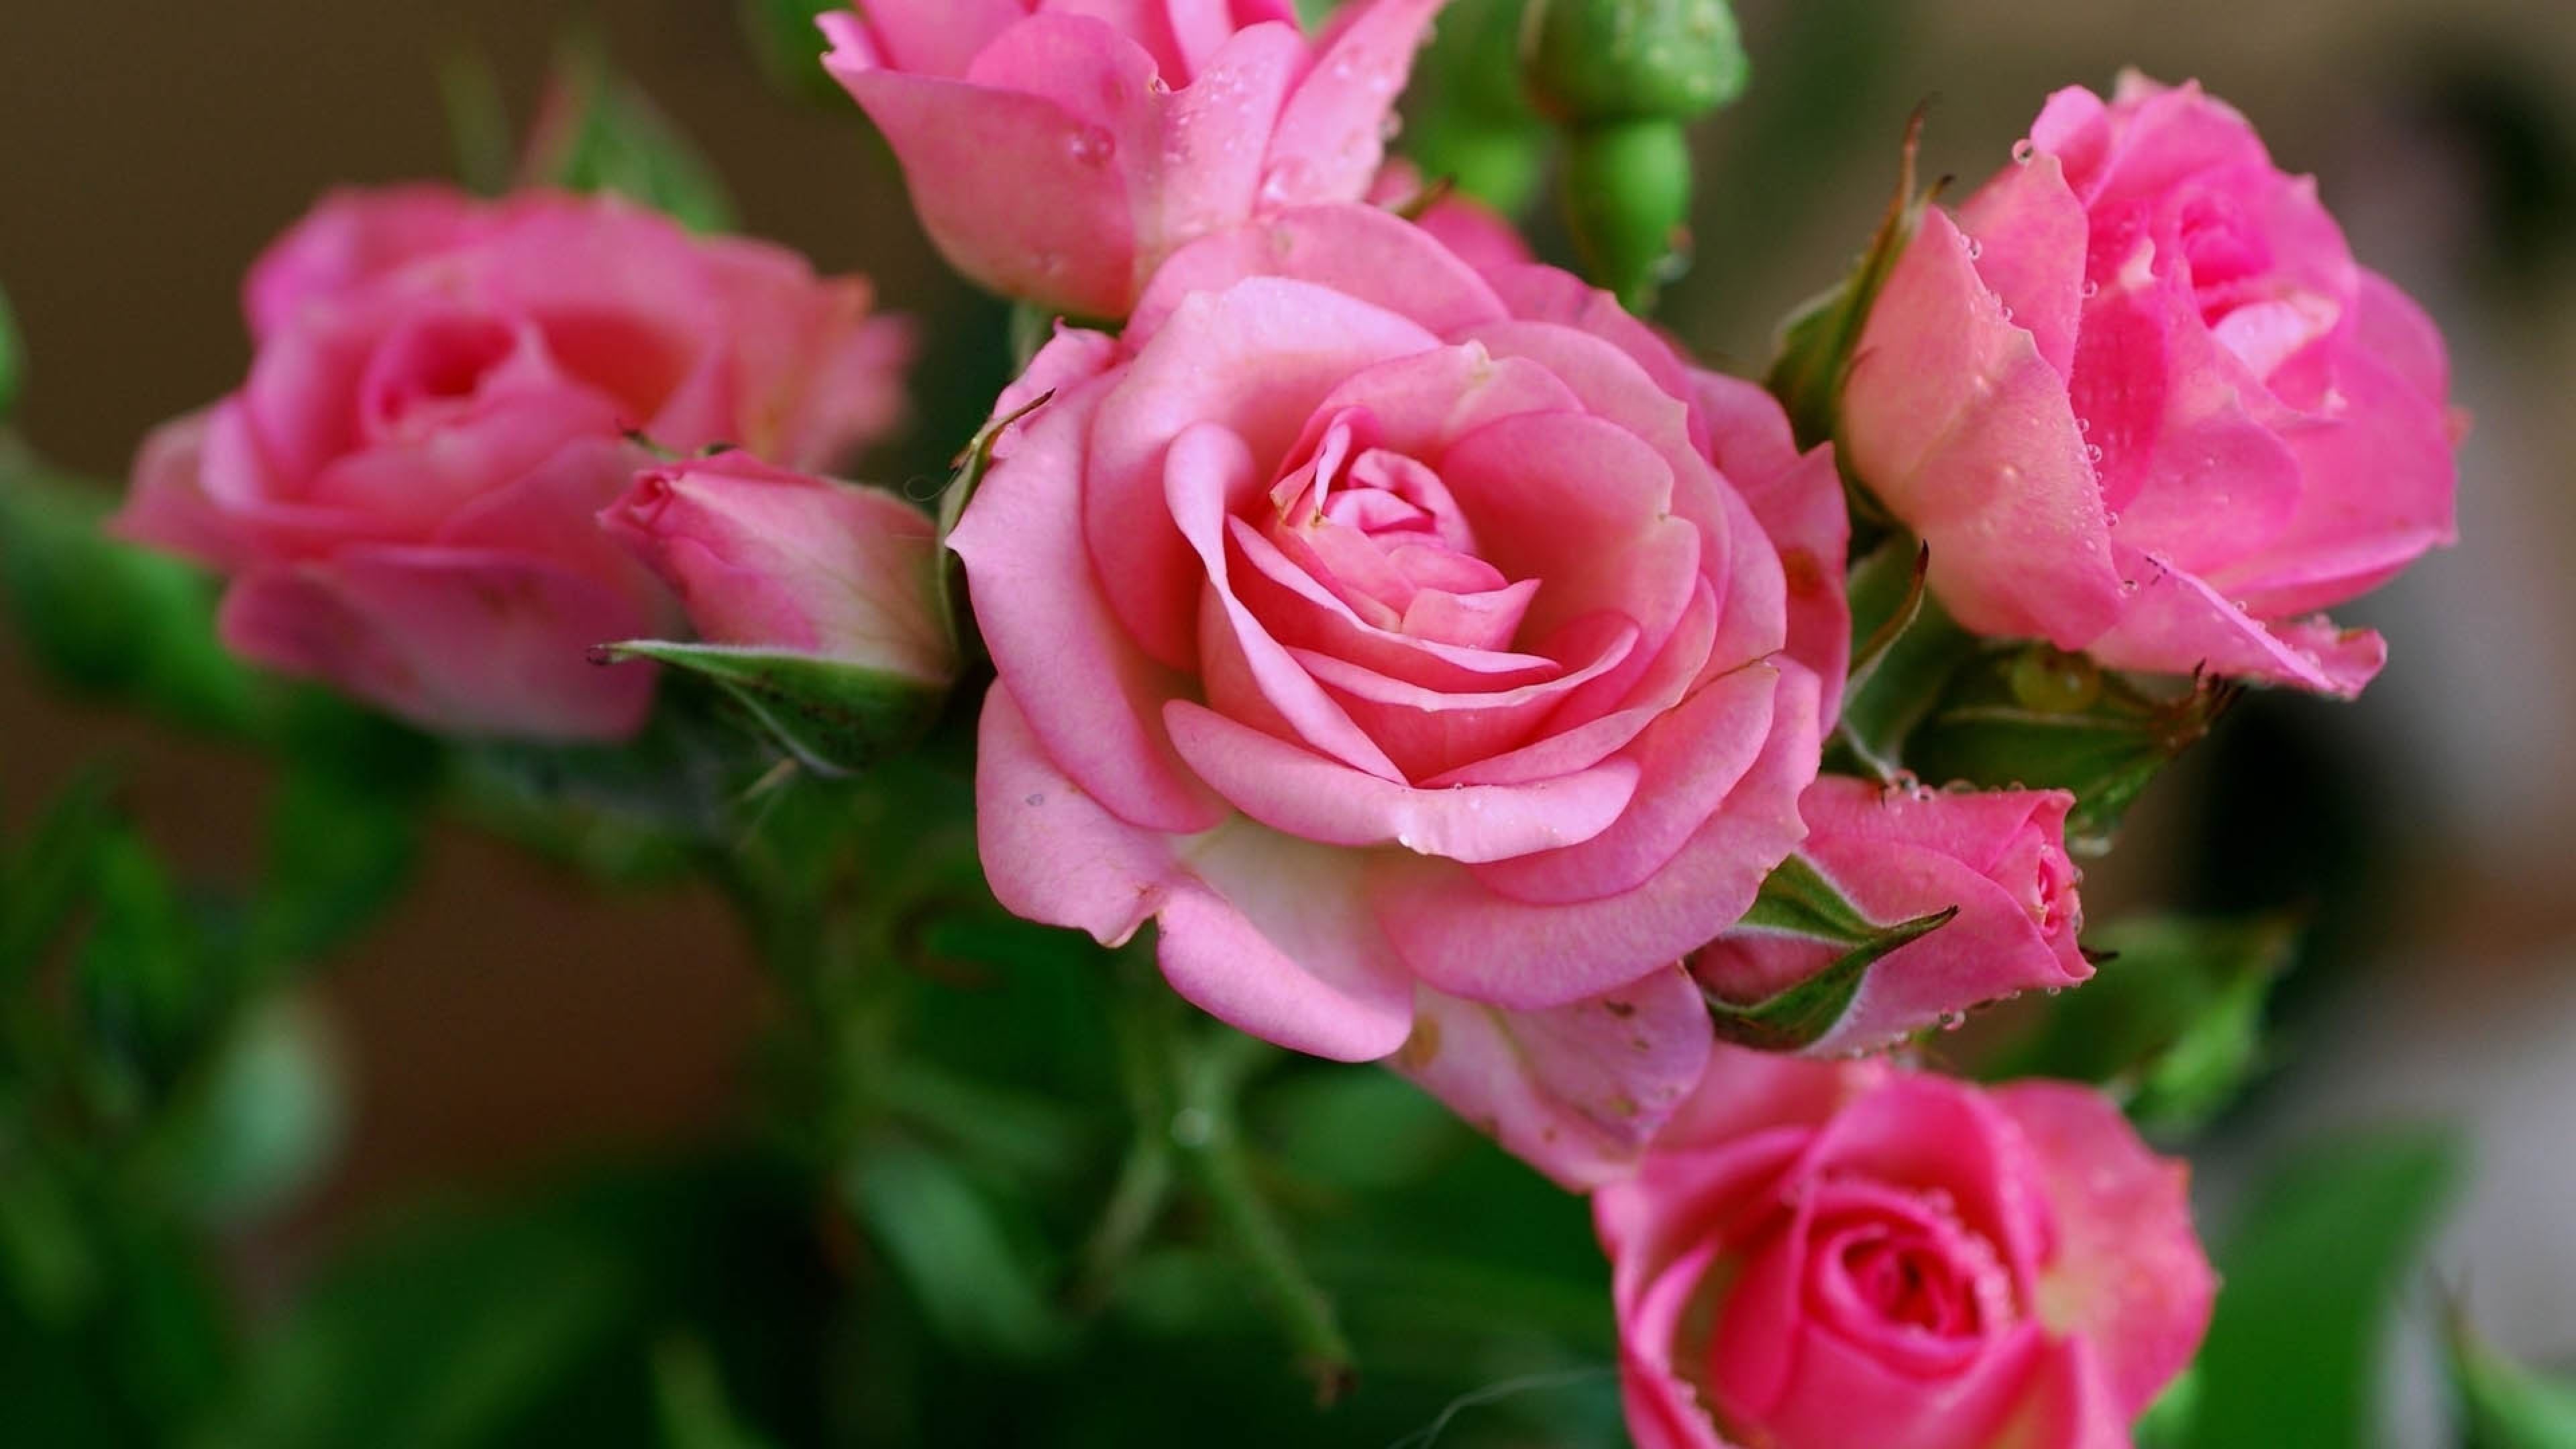 3840x2160 flowers 4K Ultra HD Wallpaper | Wallpaper  Rose, Pink, Flowers,  Bouquet 4K